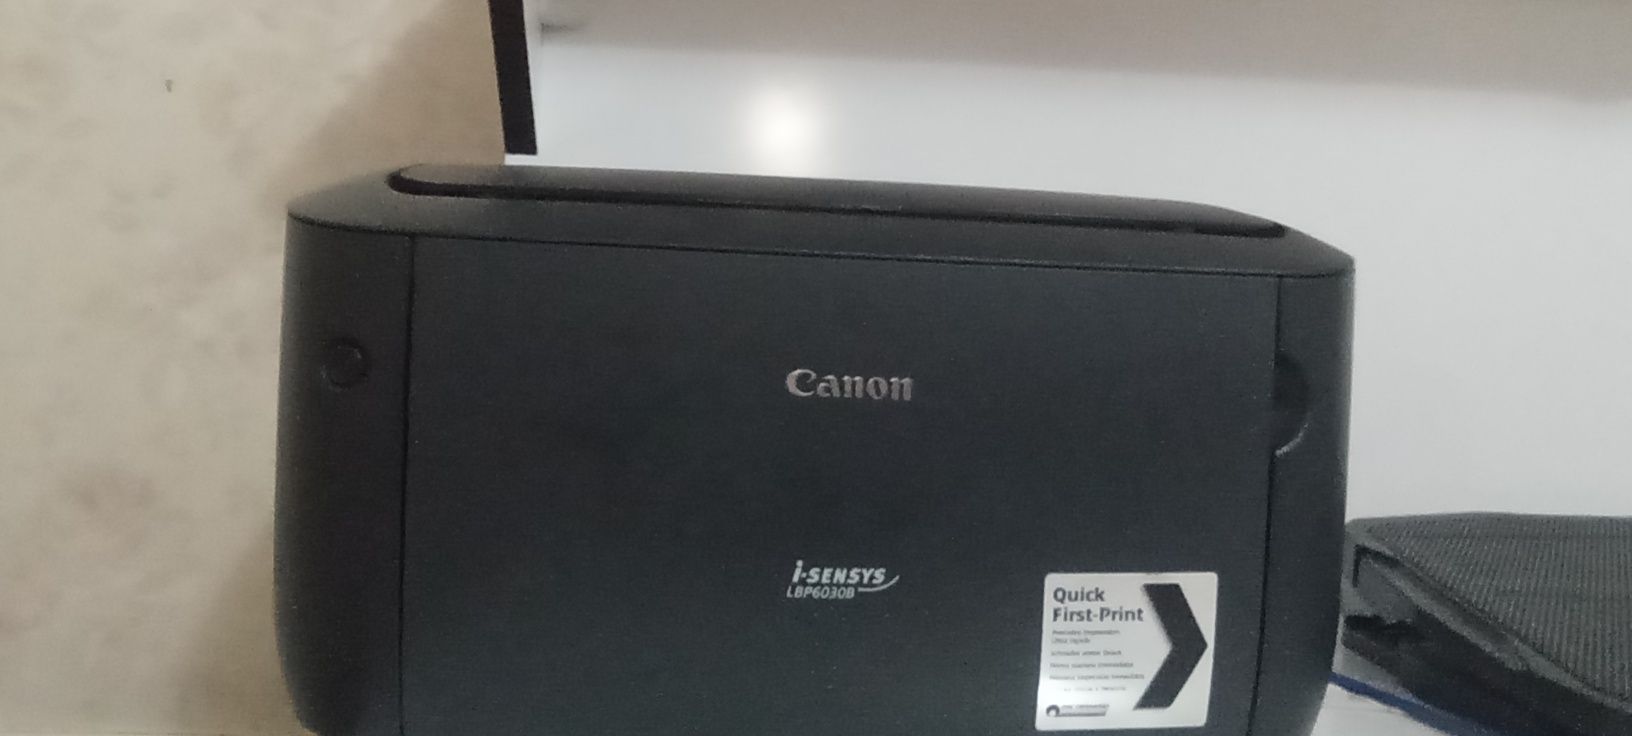 Printer canon  6030holati yangiday